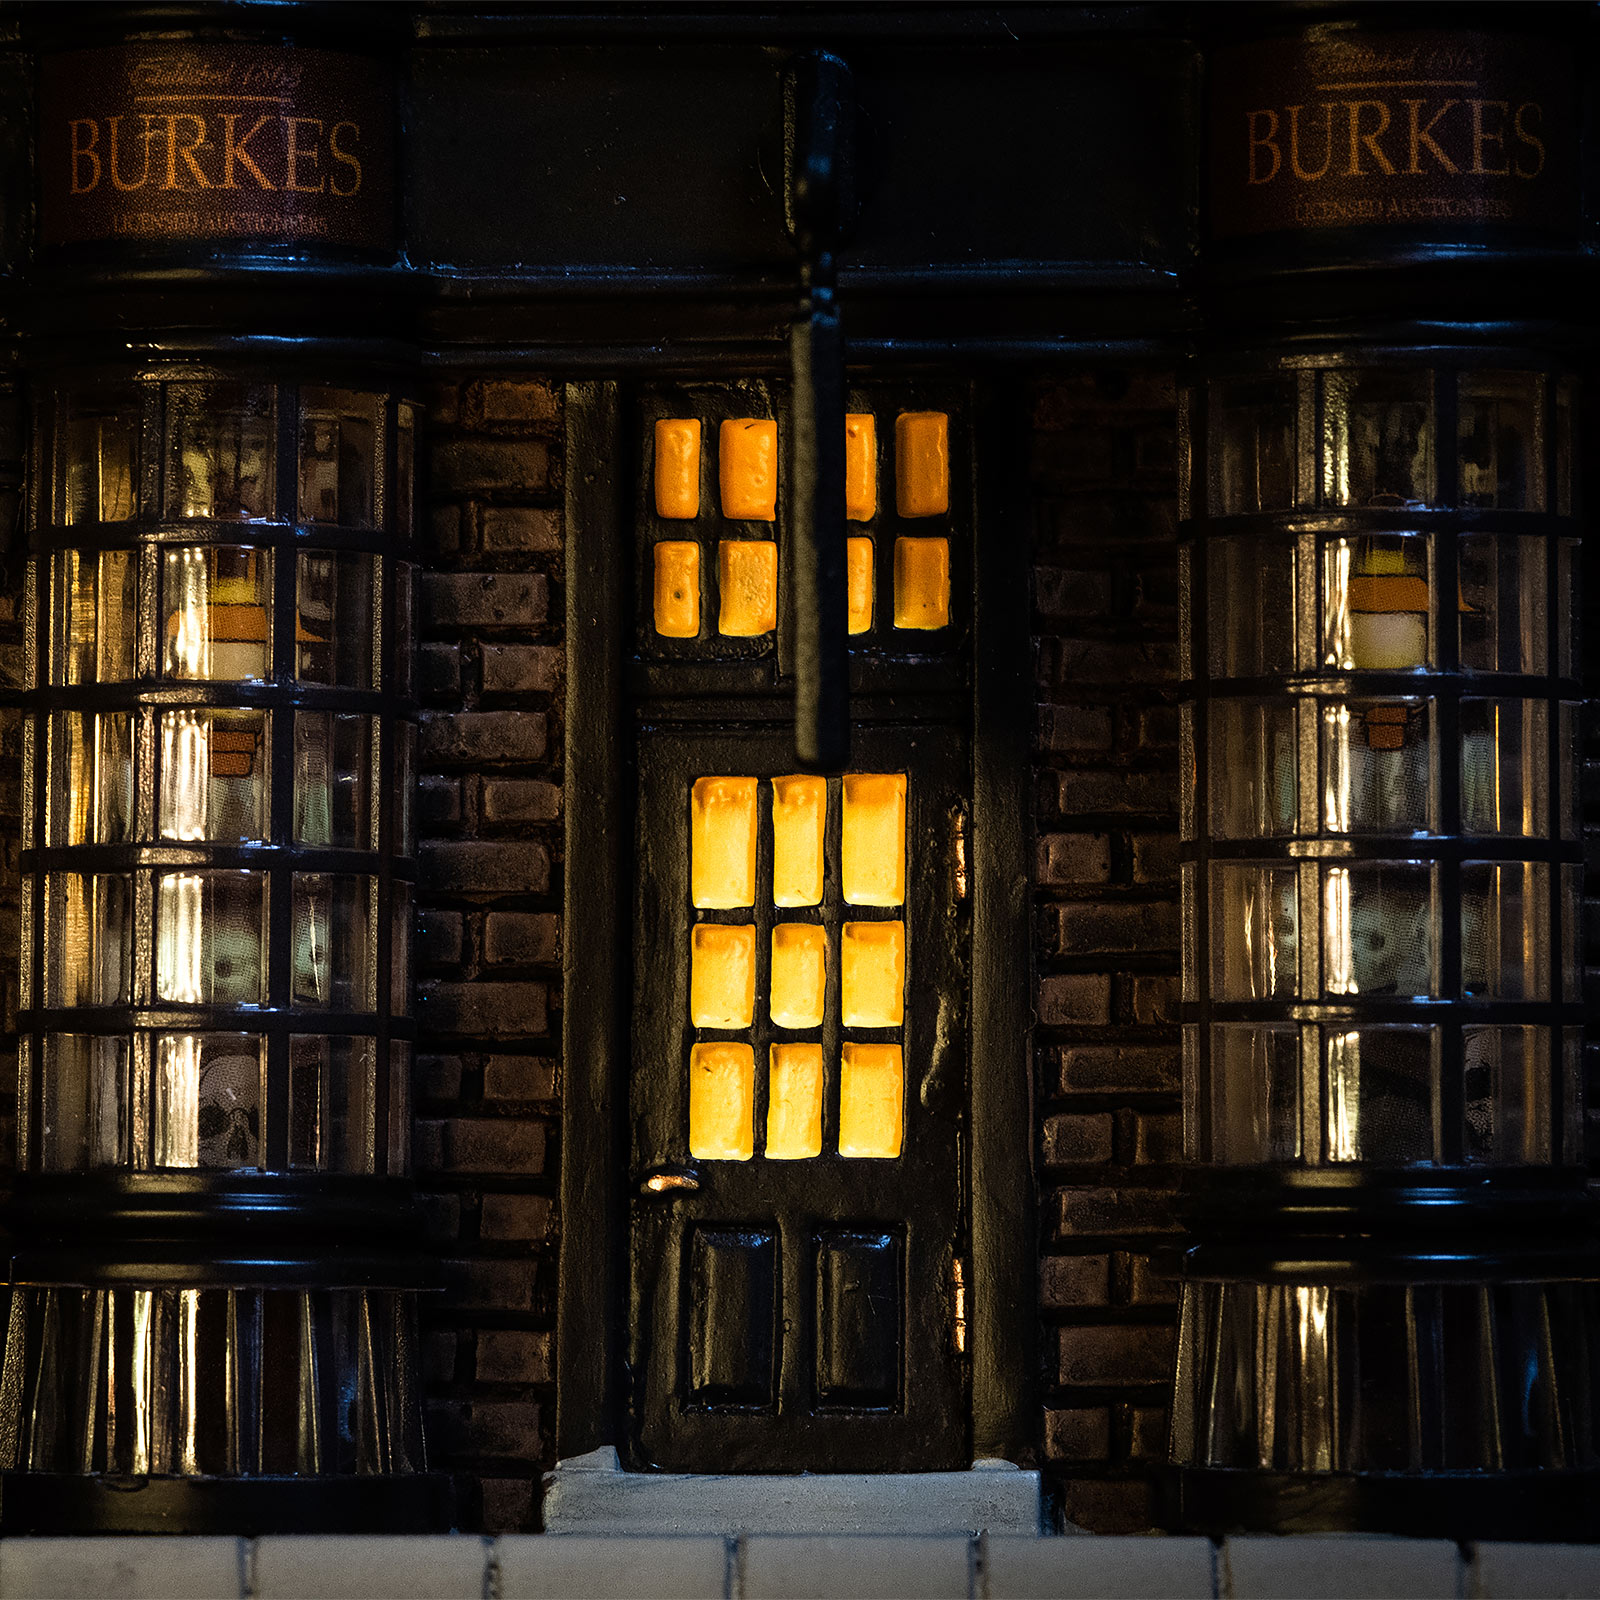 Réplique de la boutique miniature de Borgin & Burke avec éclairage - Harry Potter